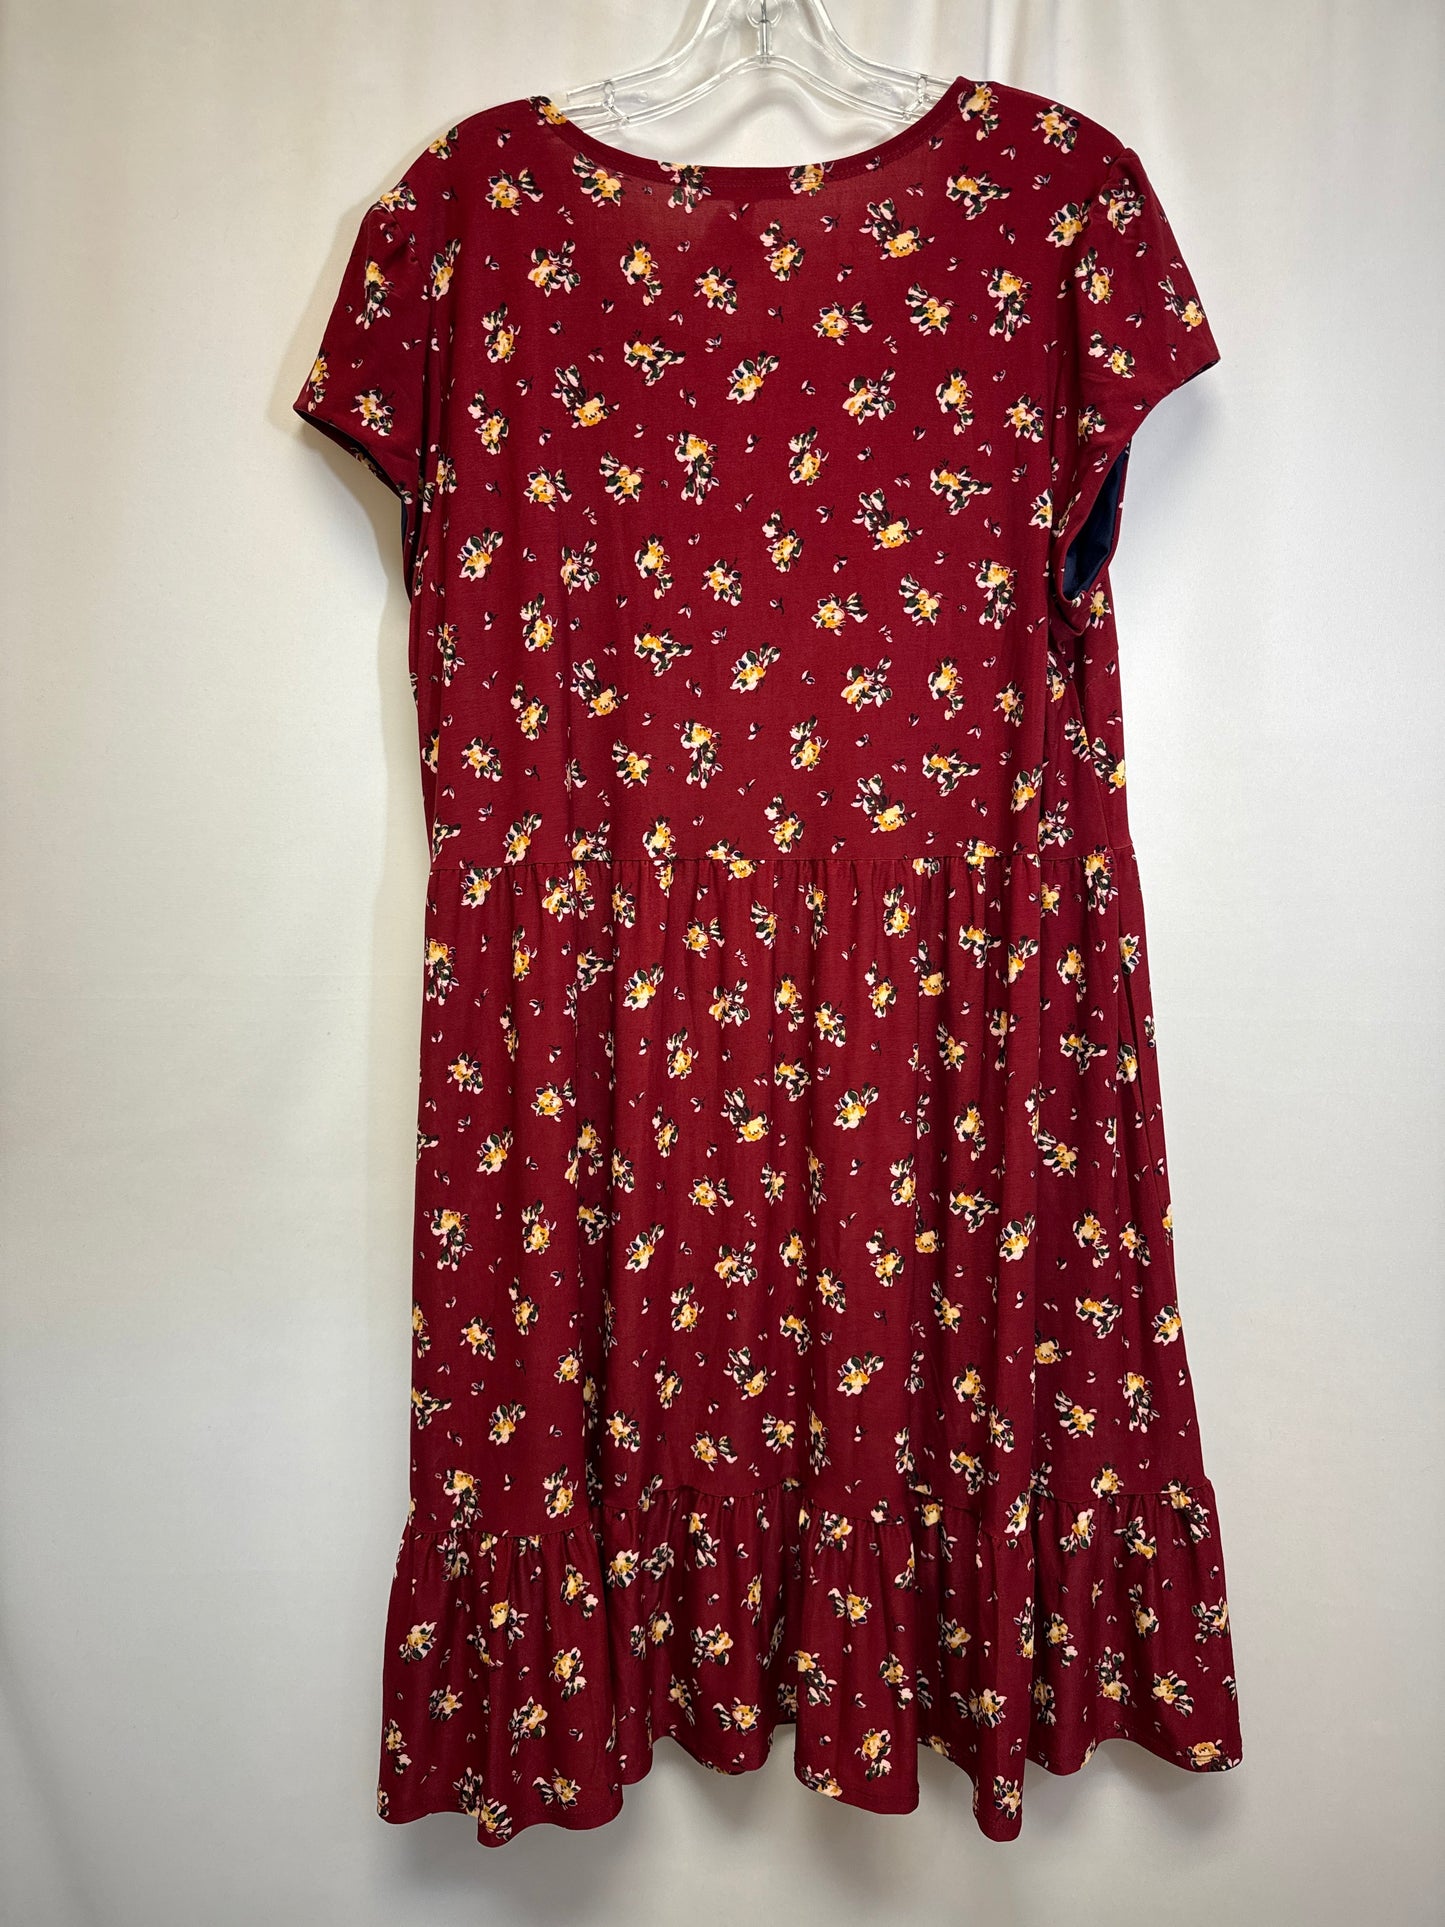 Dress Casual Midi By Sandra Darren  Size: Xl